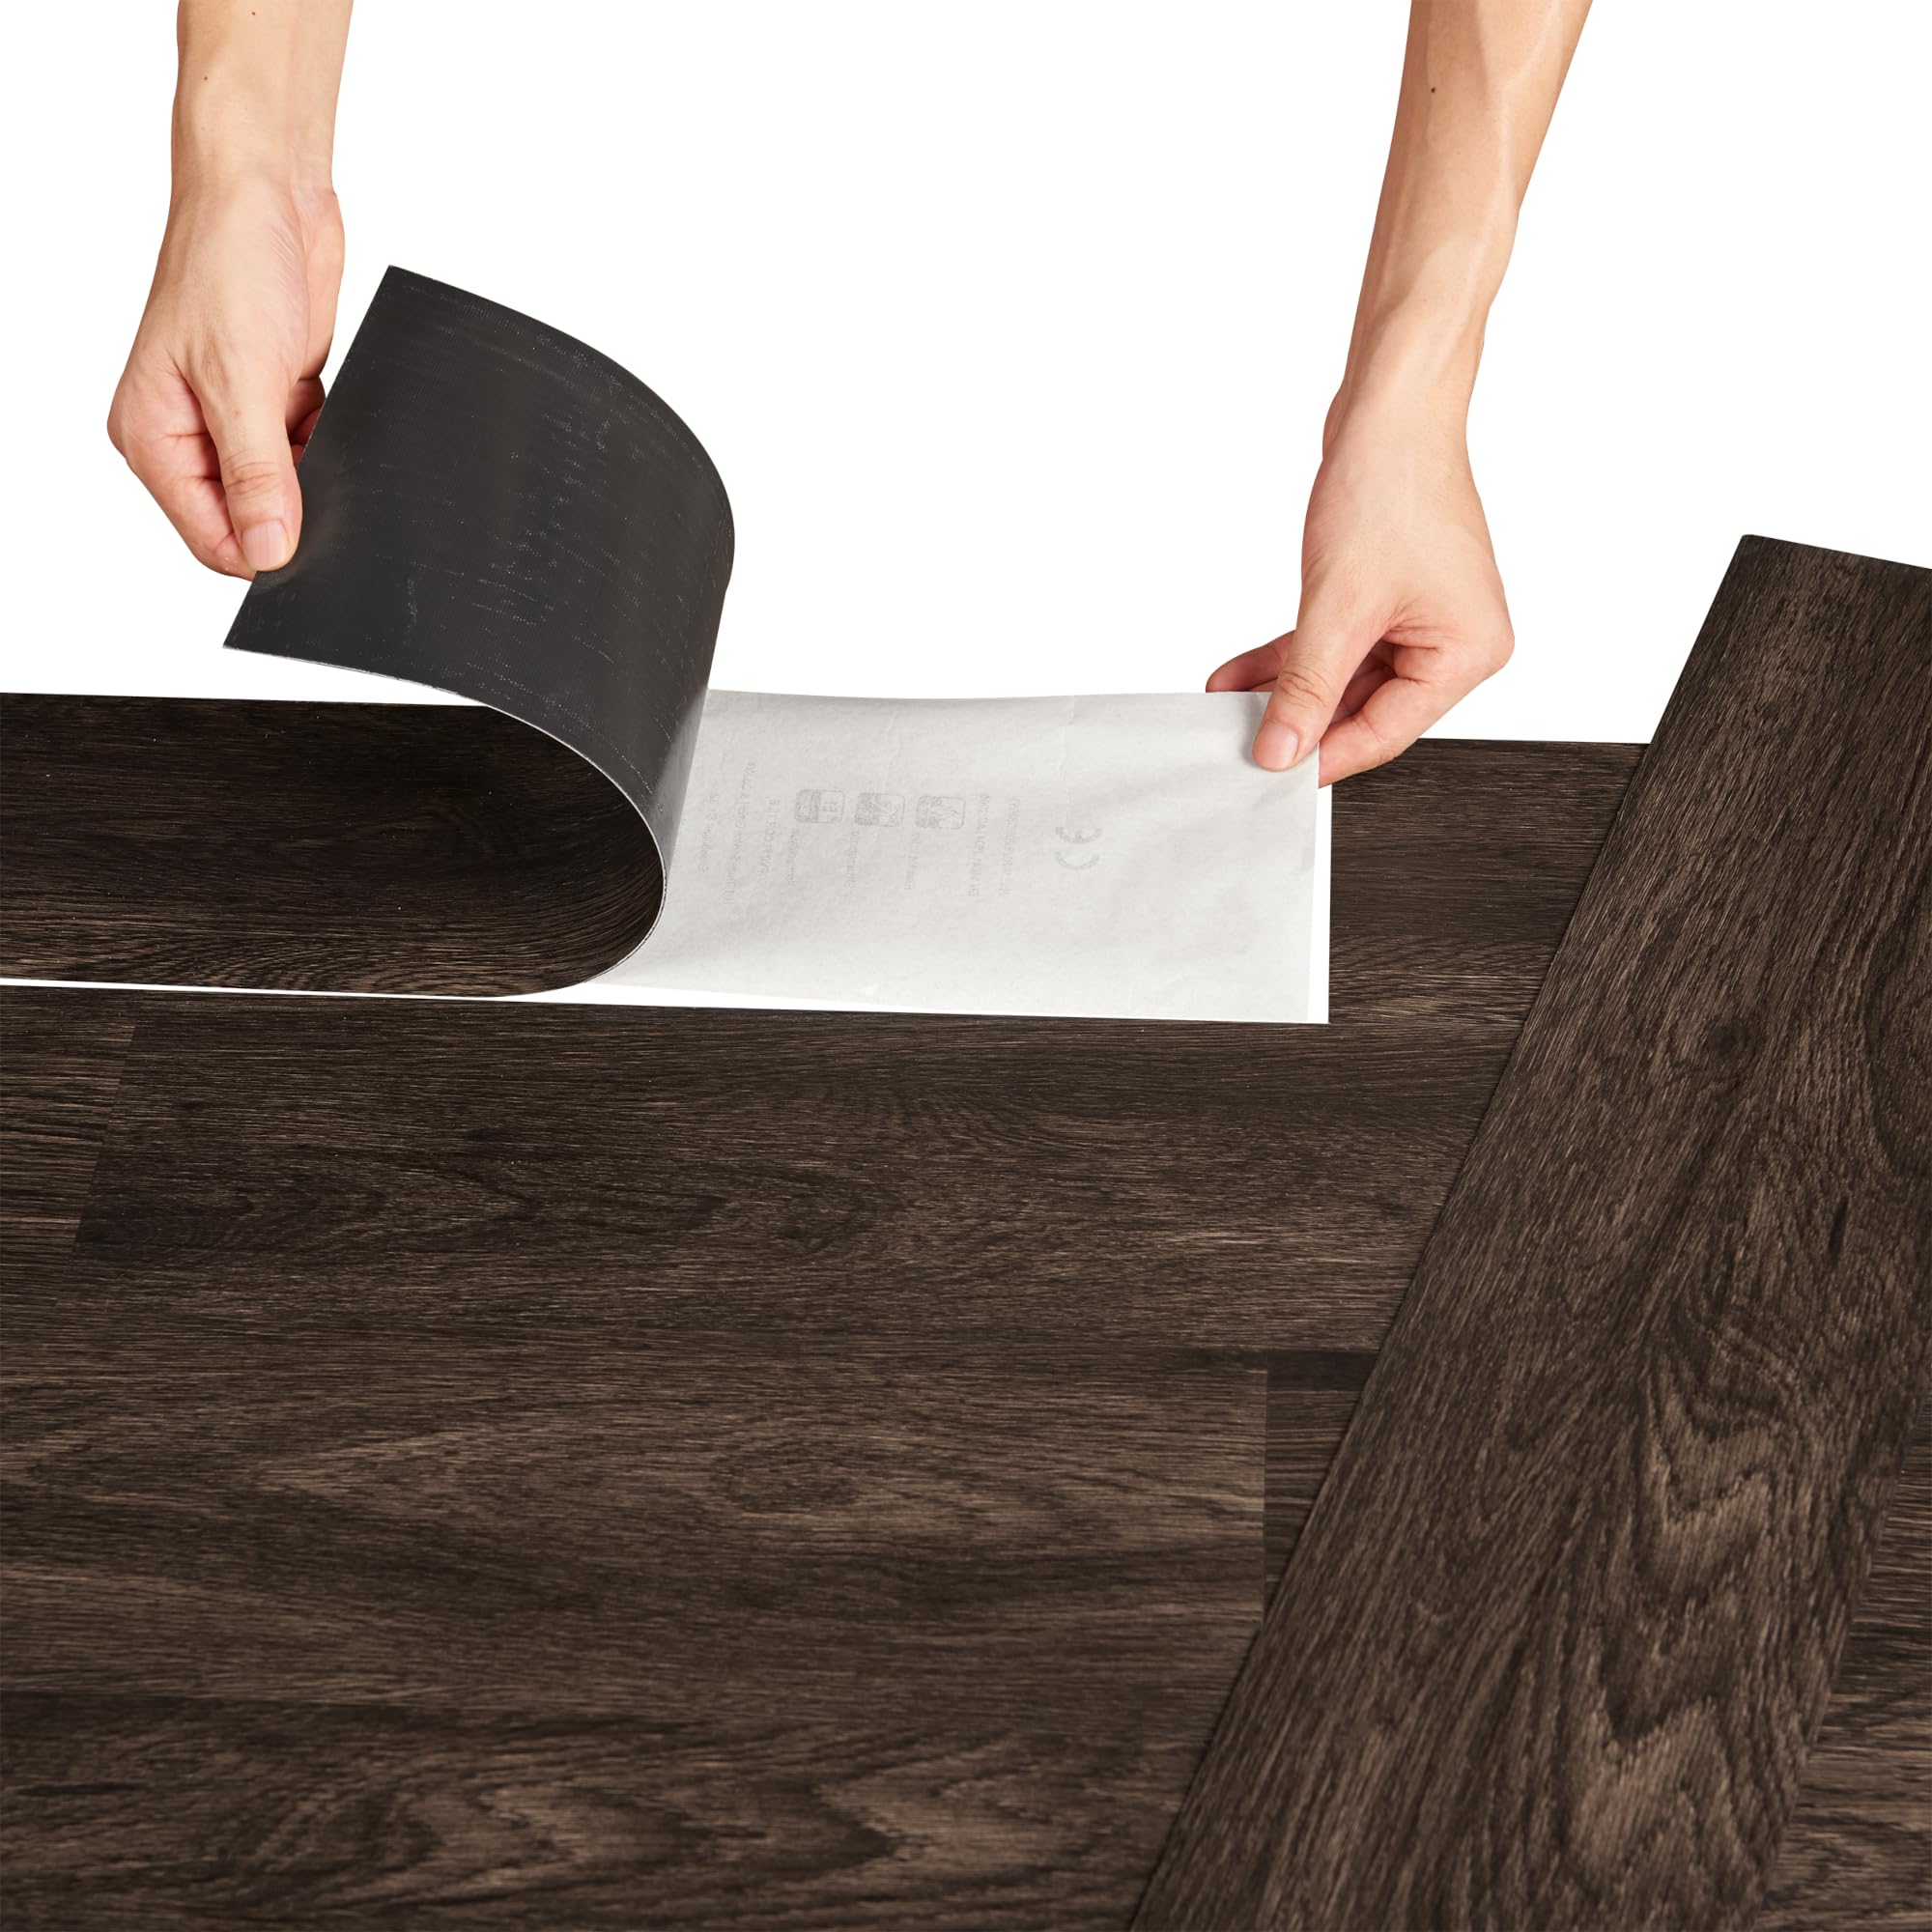 neu.holz Vinylboden Vanola Laminat Selbstklebend rutschfest Antiallergen Bodenbelag PVC-Platten 5,85 m² Dark Wood Wenge